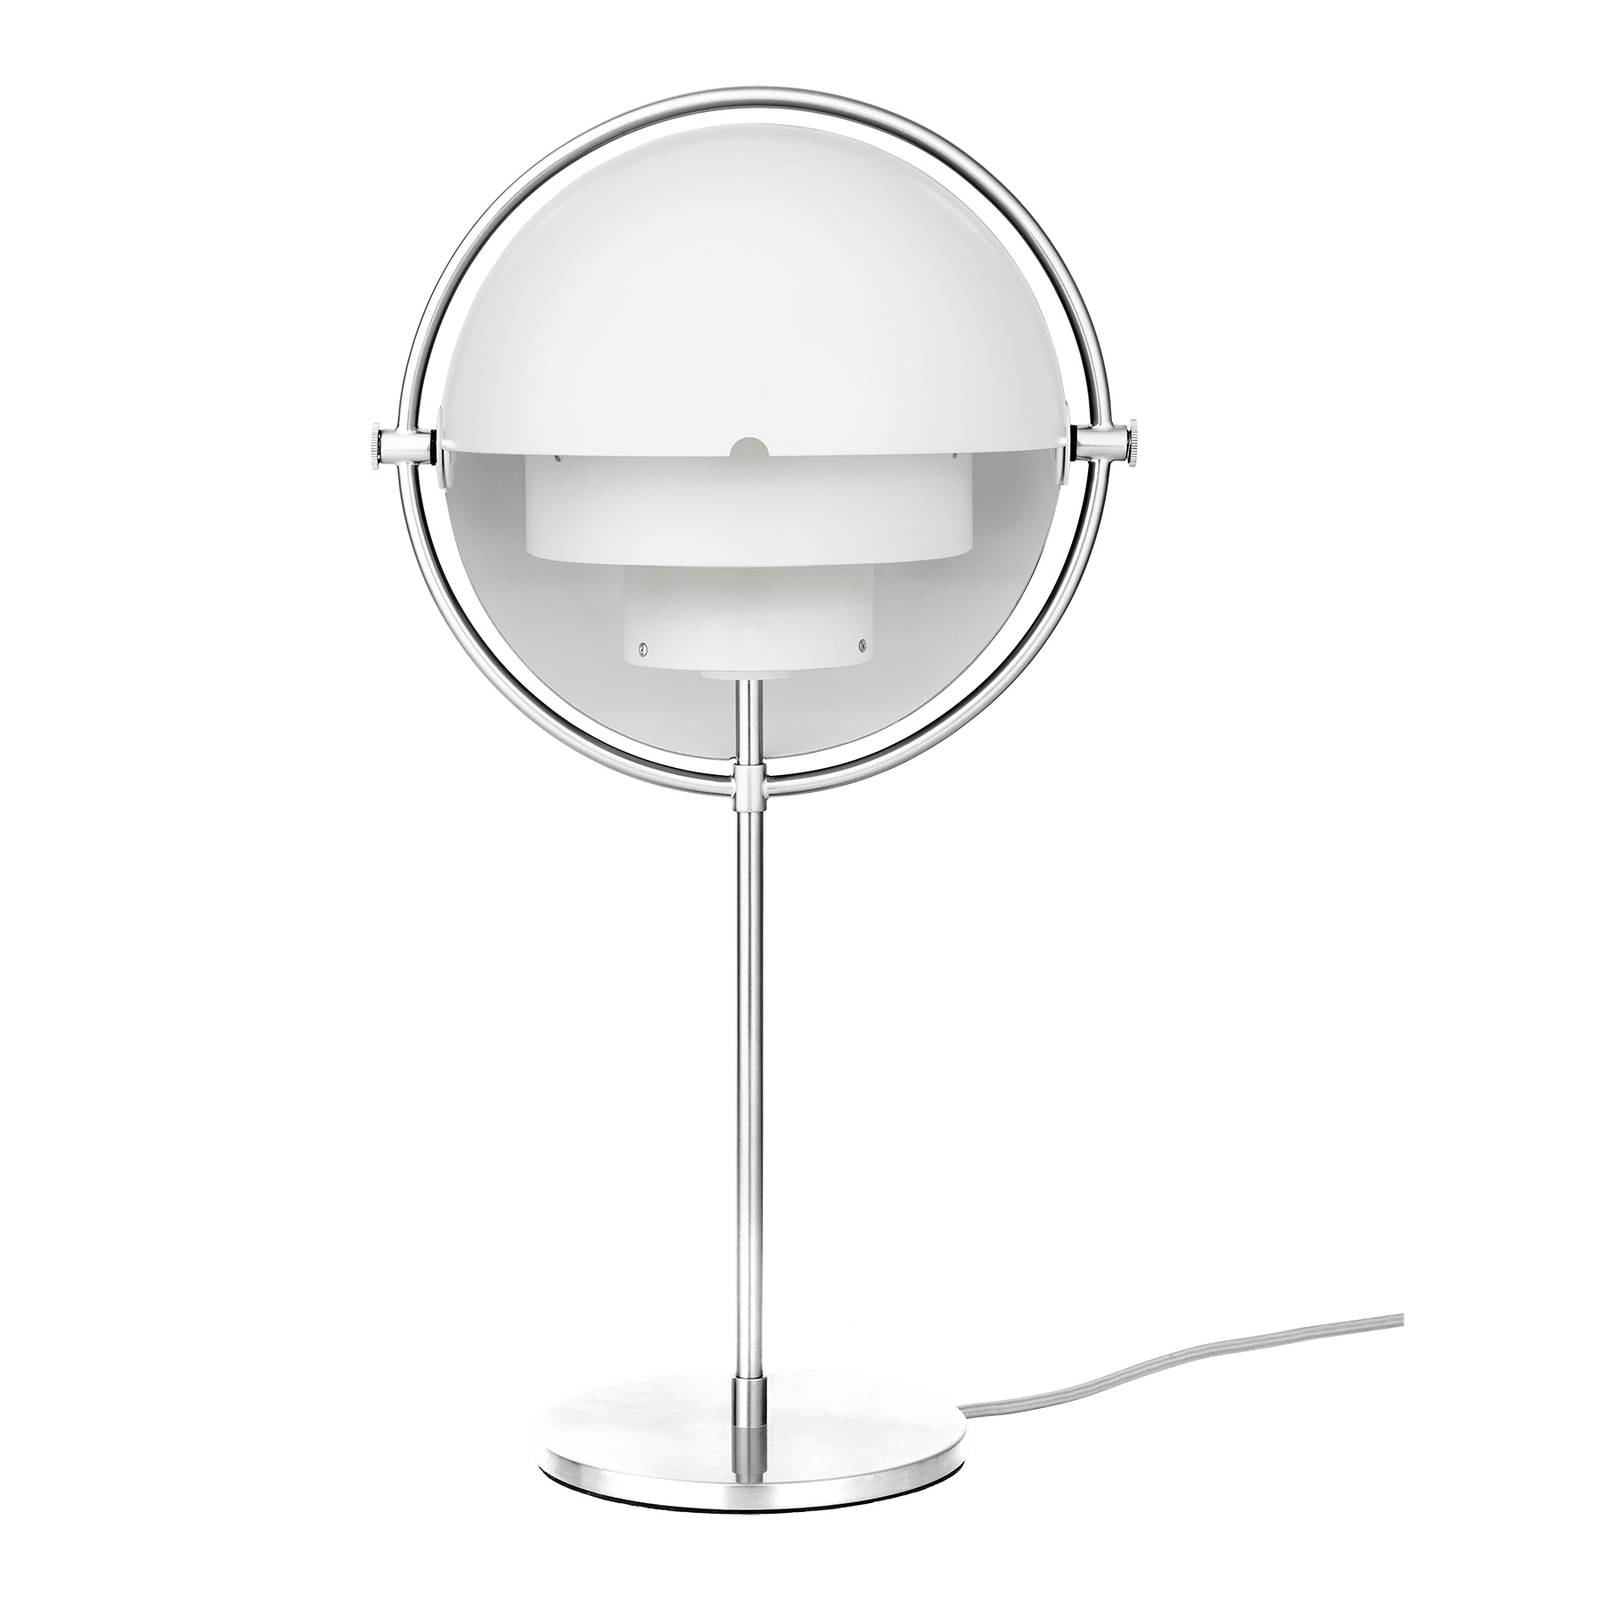 Image of GUBI Lampe à poser Multi-Lite, hauteur 50 cm, chrome/blanc 5710902839565